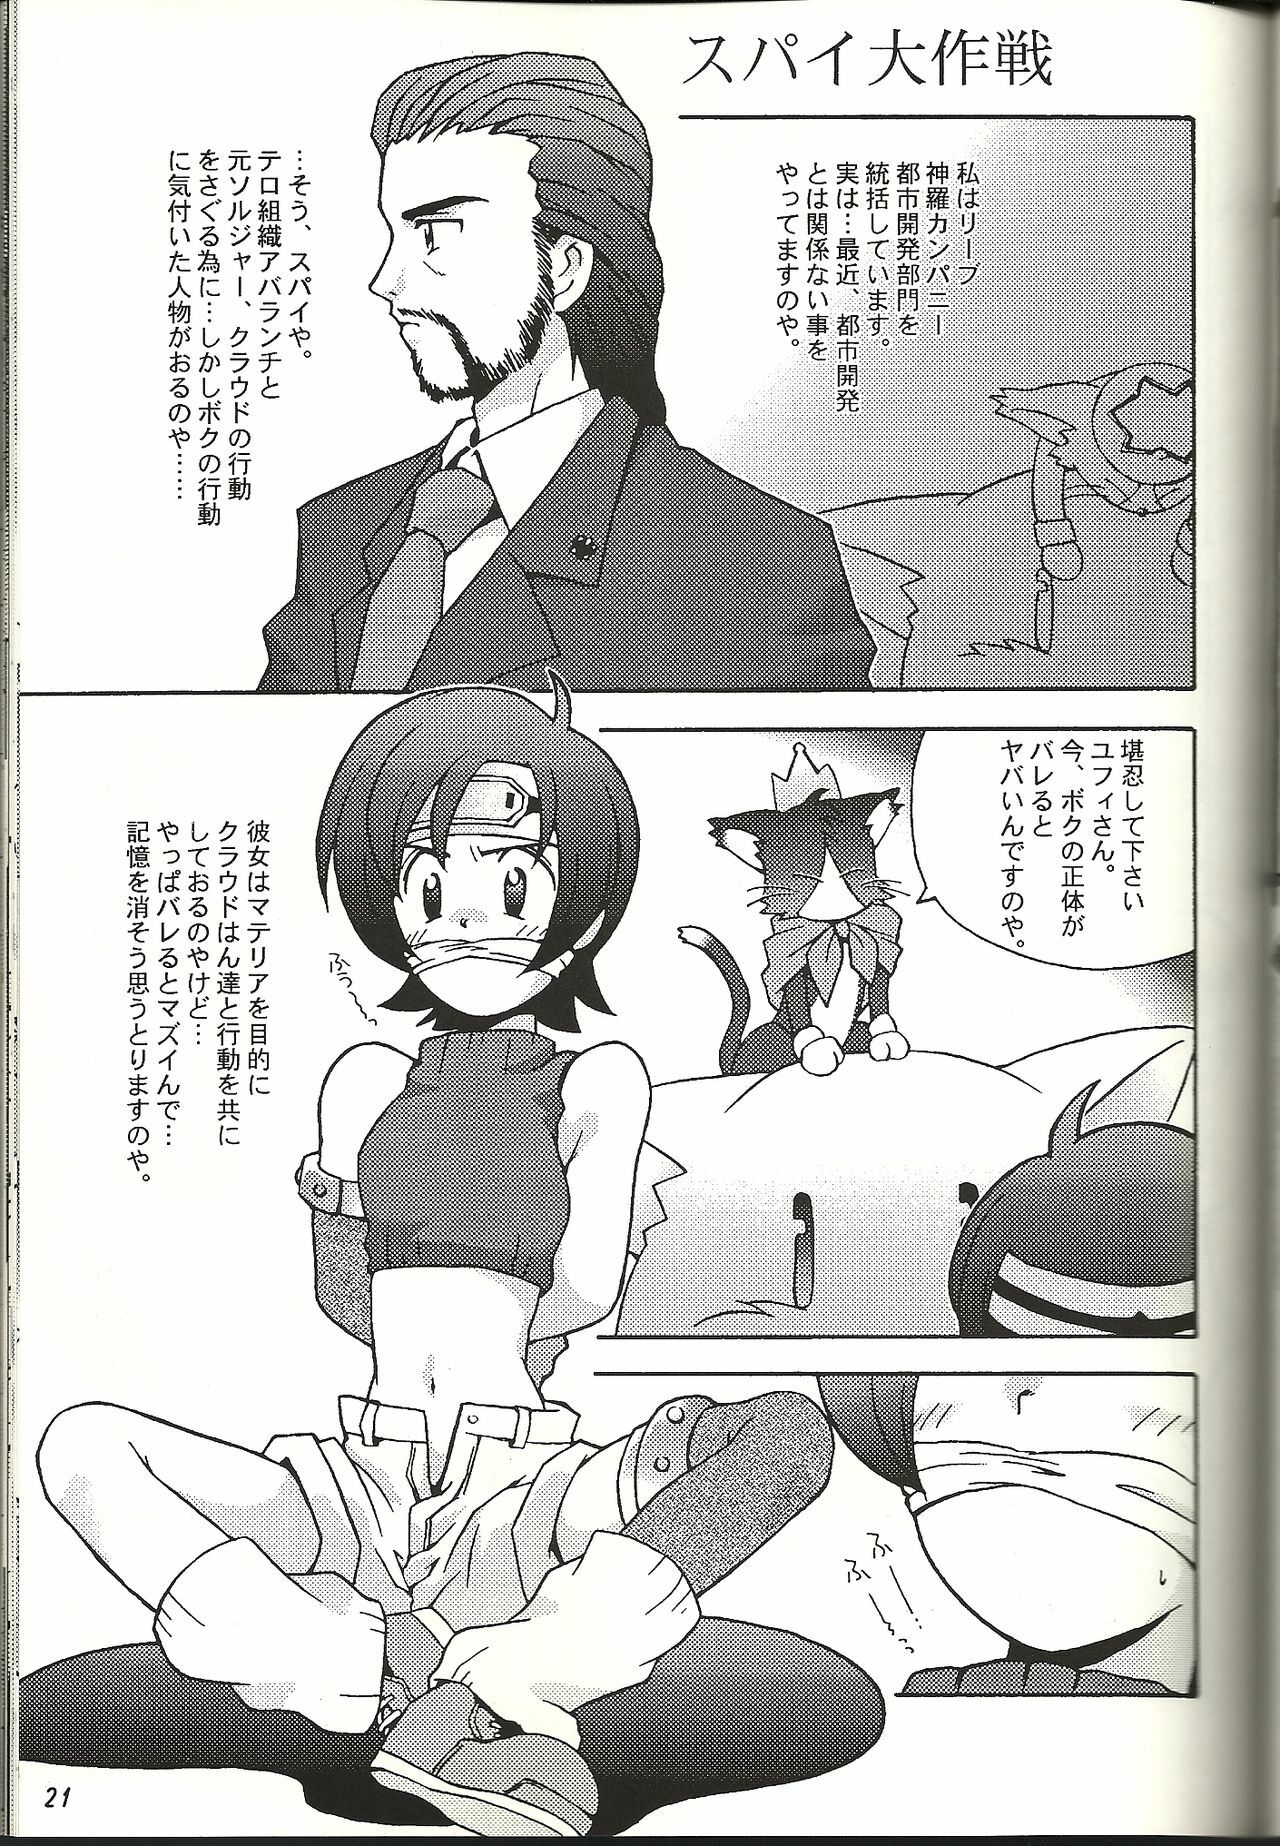 (CR21) [Bakuhatsu BRS. (B.Tarou)] Renai Shiyou (Final Fantasy VII) page 21 full